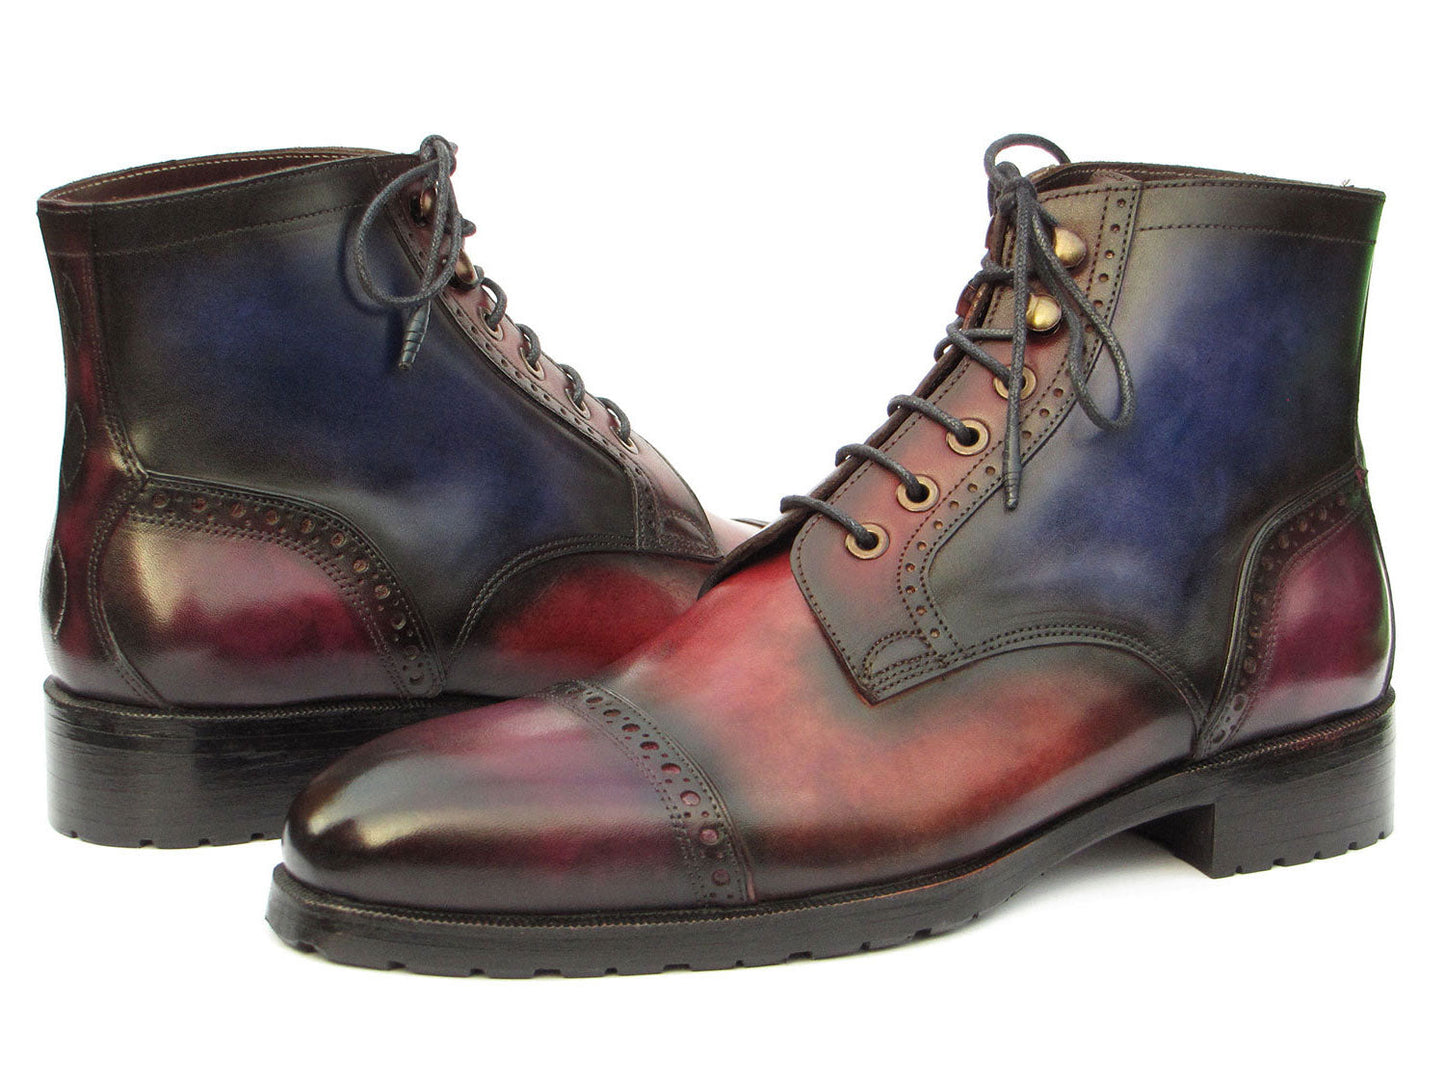 Paul Parkman Men's Multicolor Hand-Painted Cap Toe Boots (ID#BT9566-MLT)